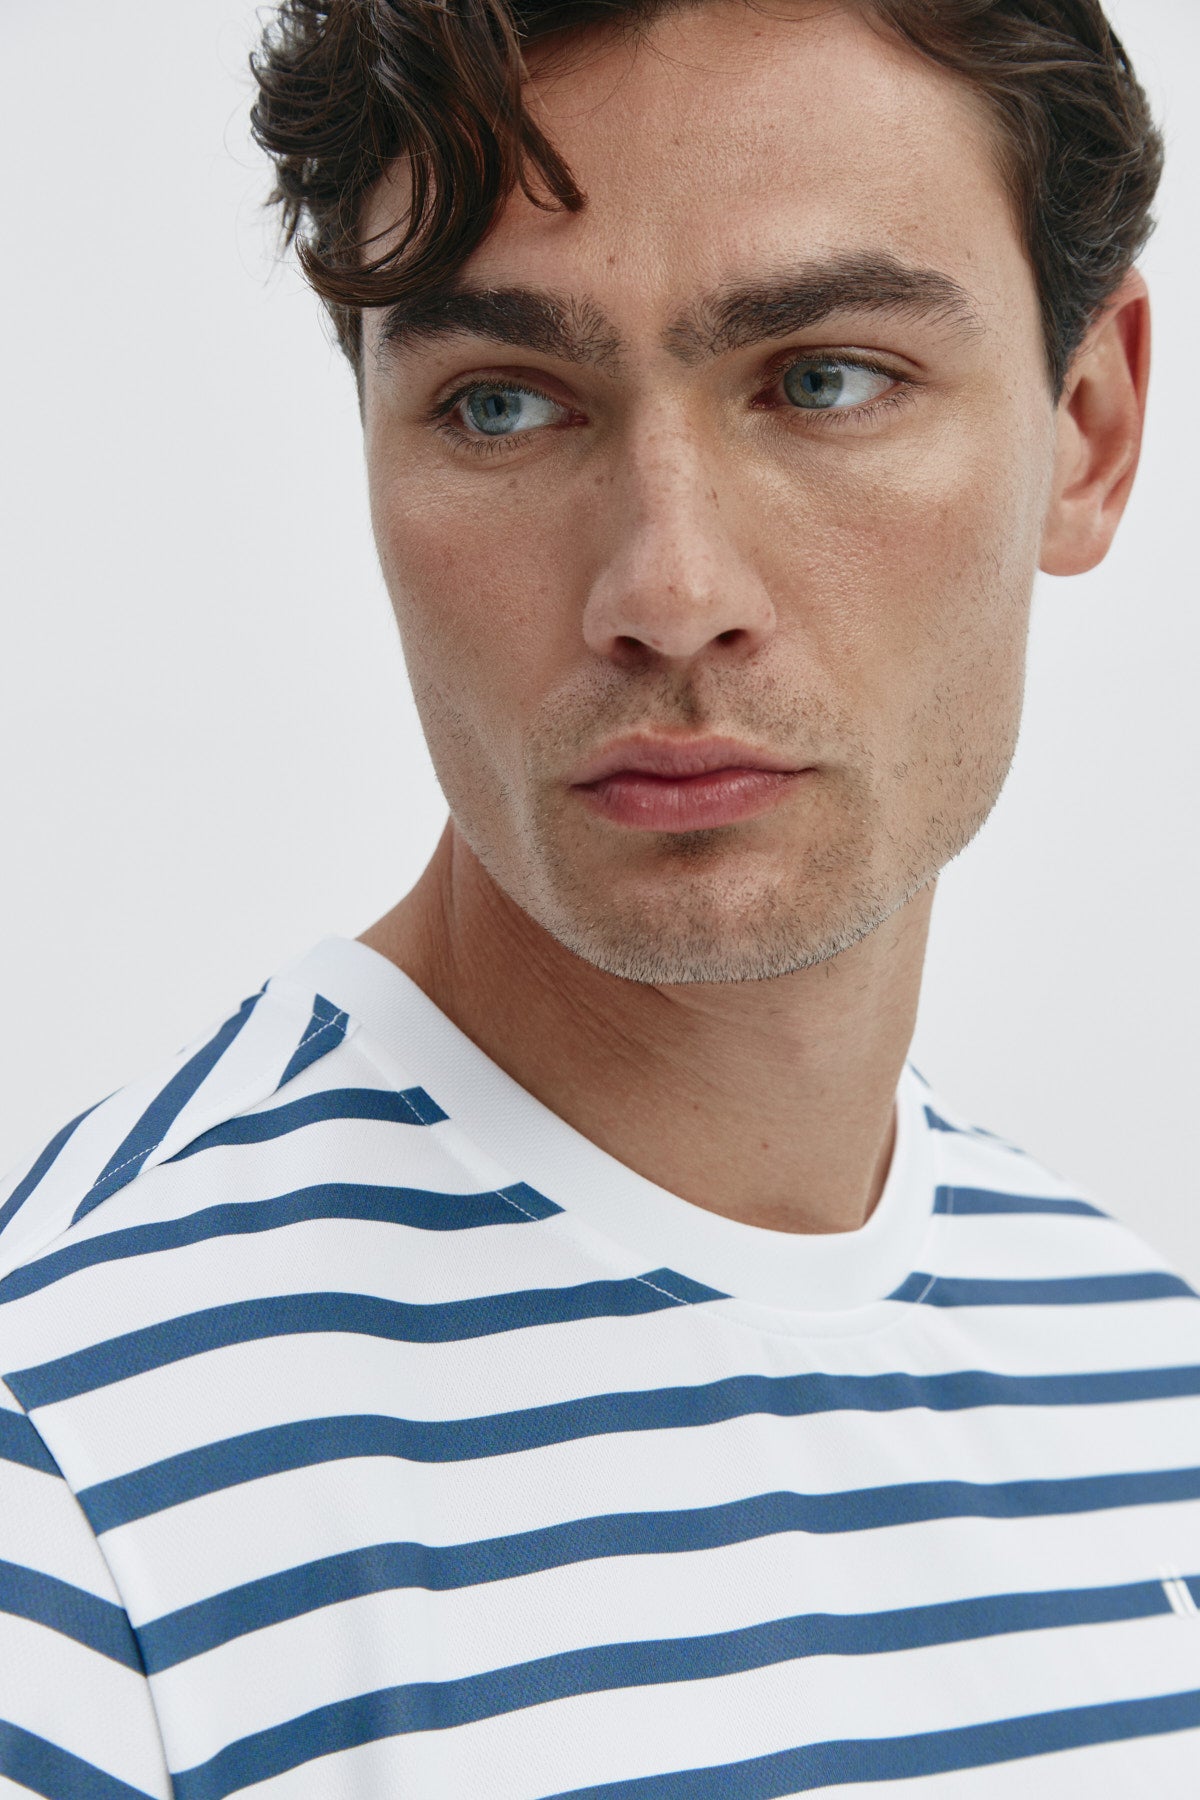 Camiseta de hombre con rayas marino de Sepiia, estilo y versatilidad en una prenda resistente. Foto retrato